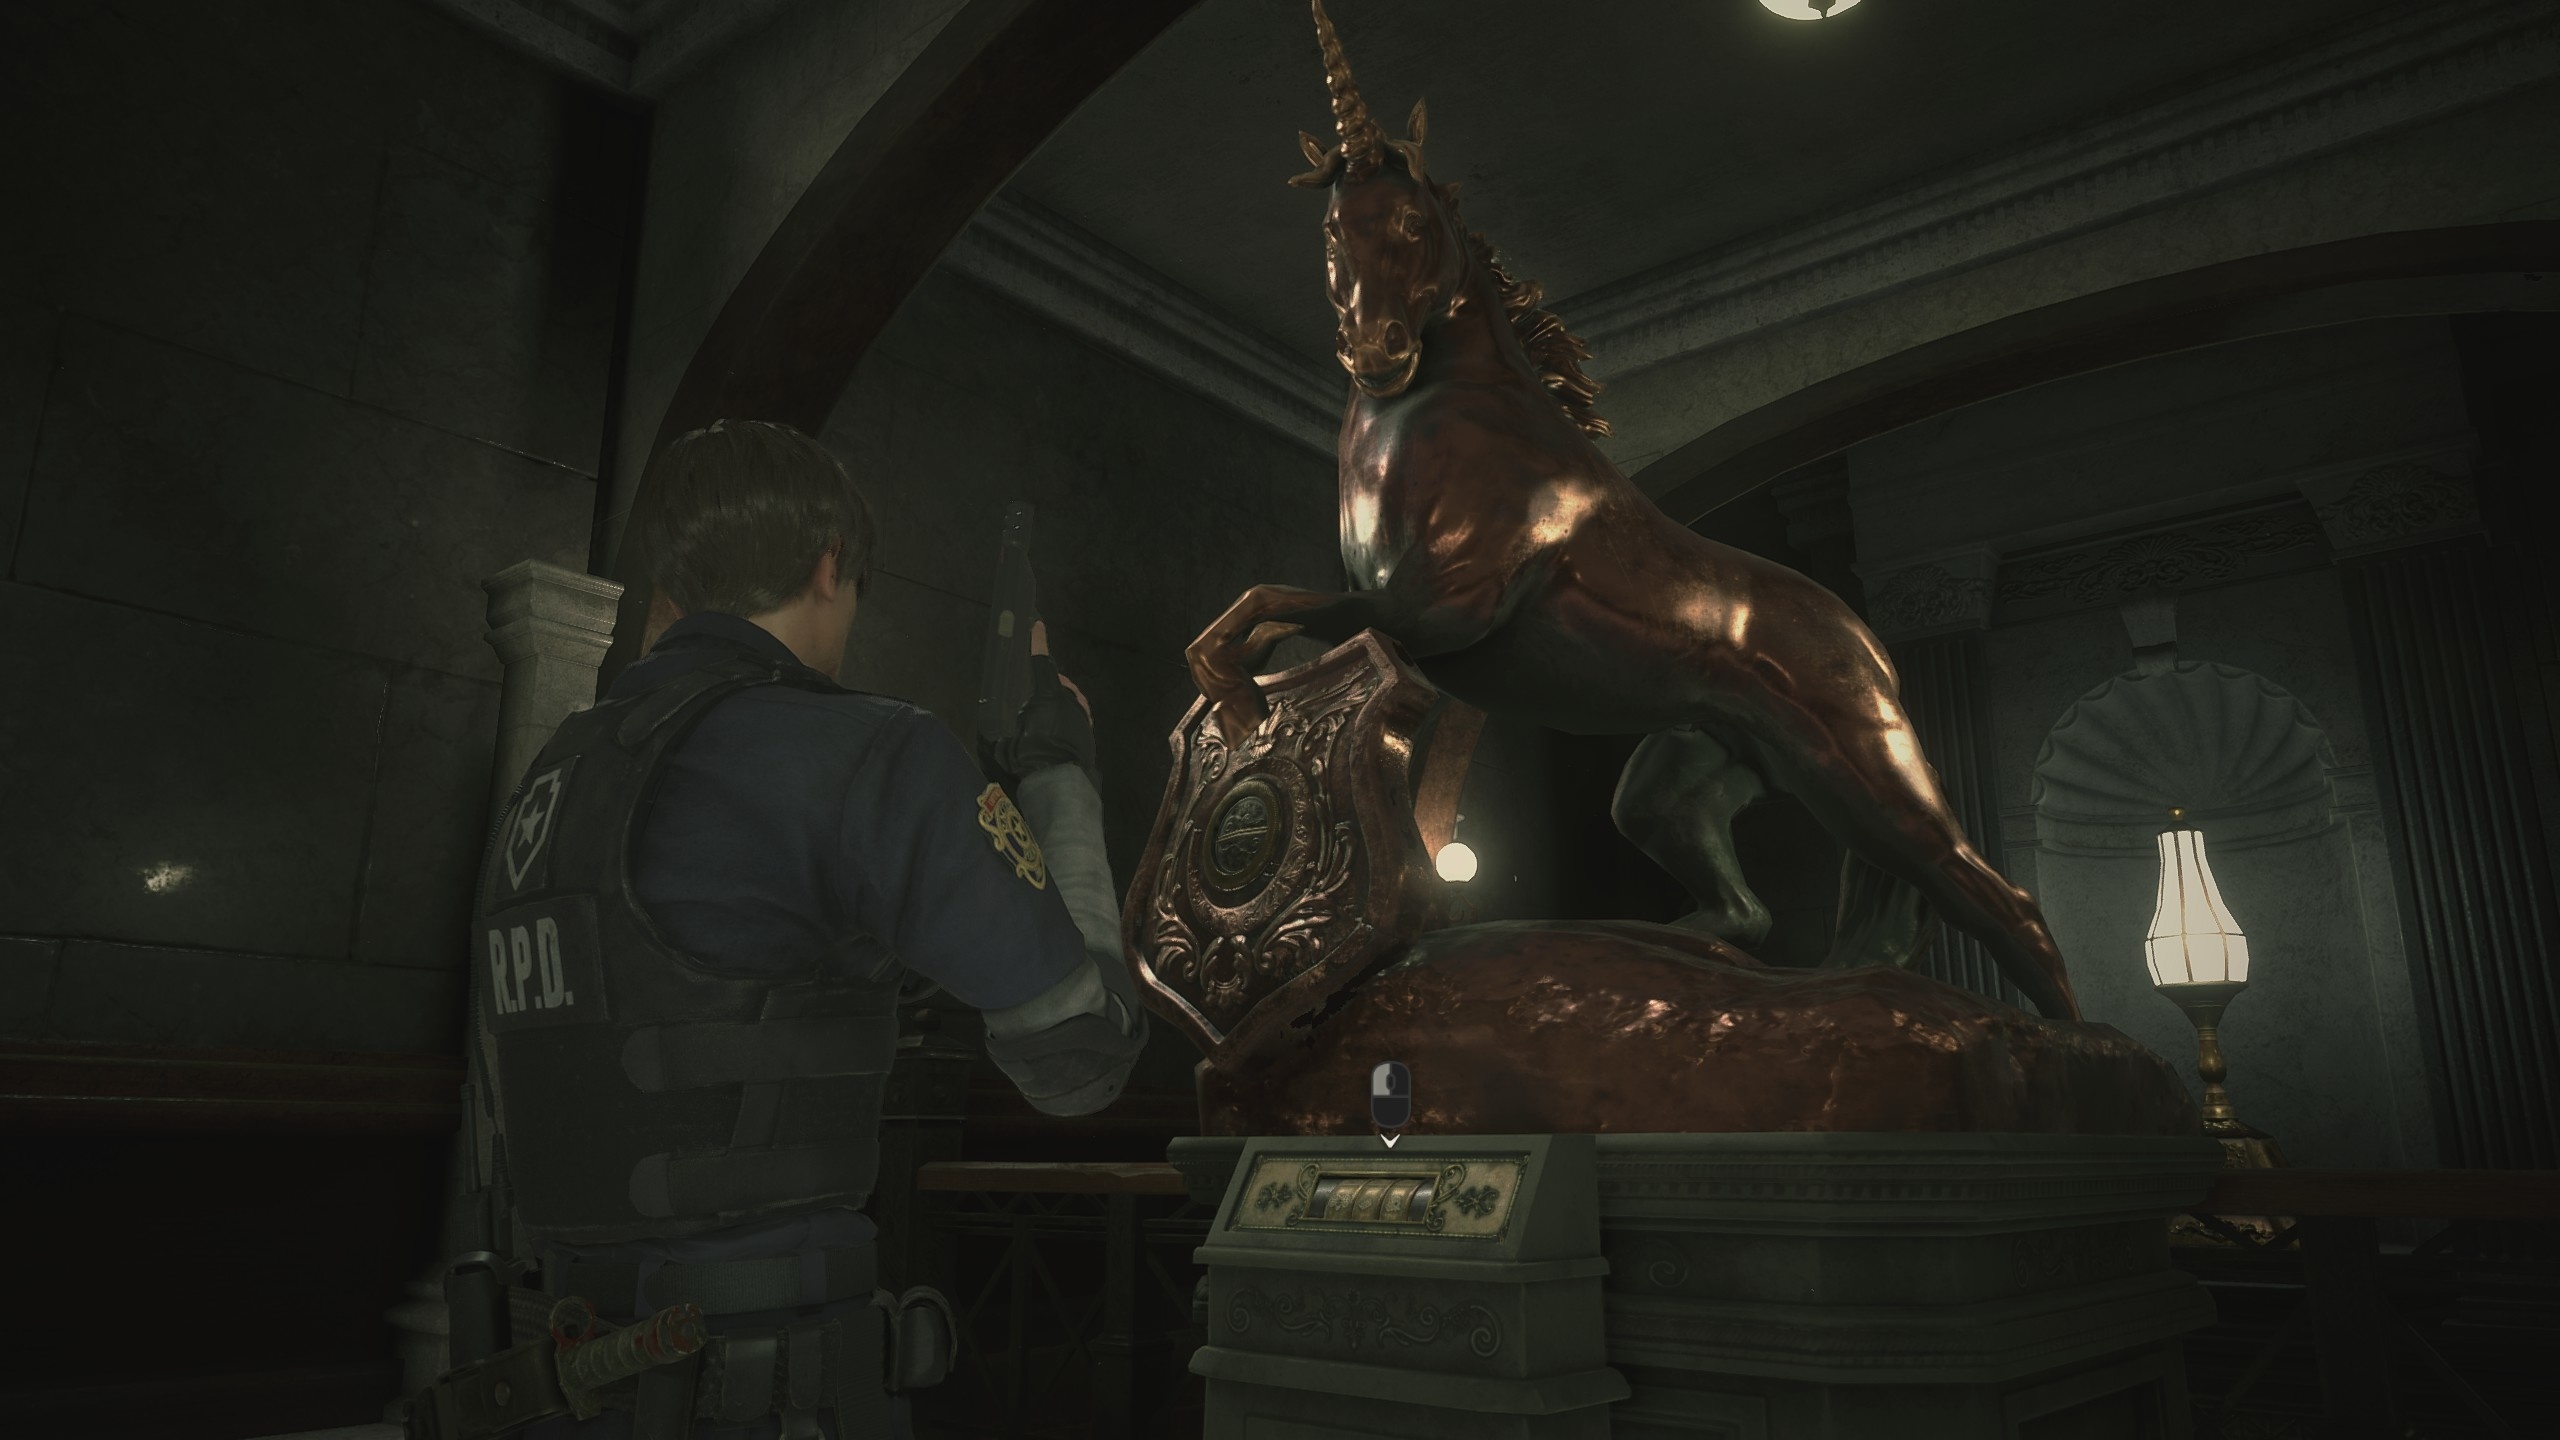 Единорог resident evil. Статуя единорога в Resident Evil 2. Резидент ивел 2 Клэр статуя единорога. Статуя единорога в Resident Evil 2 Remake.